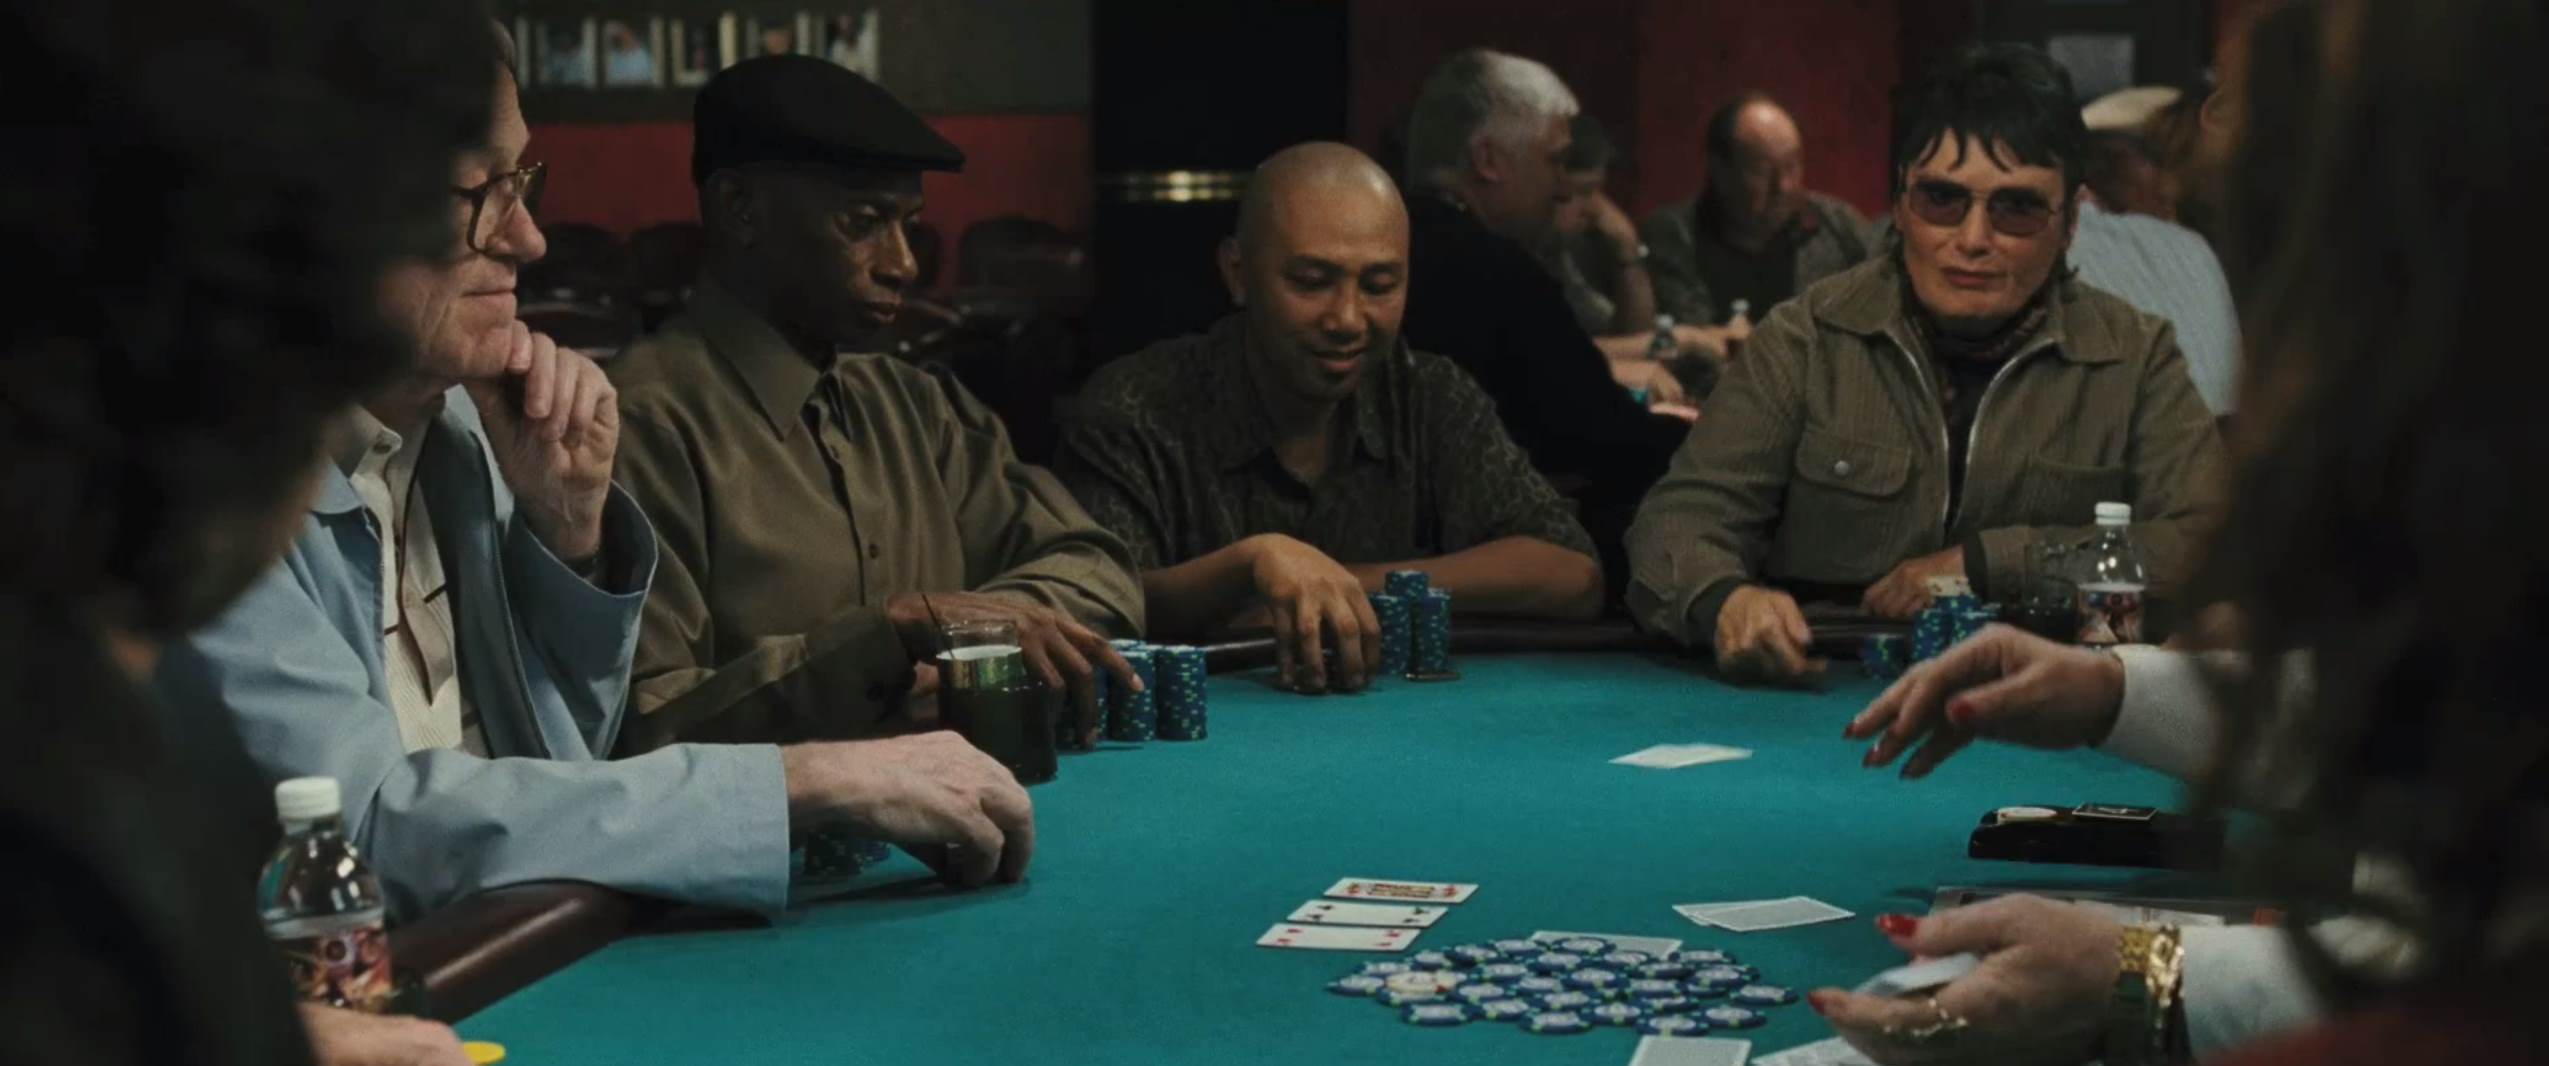 Смотреть фильм онлайн бесплатно про покер как работает рулетка в онлайн